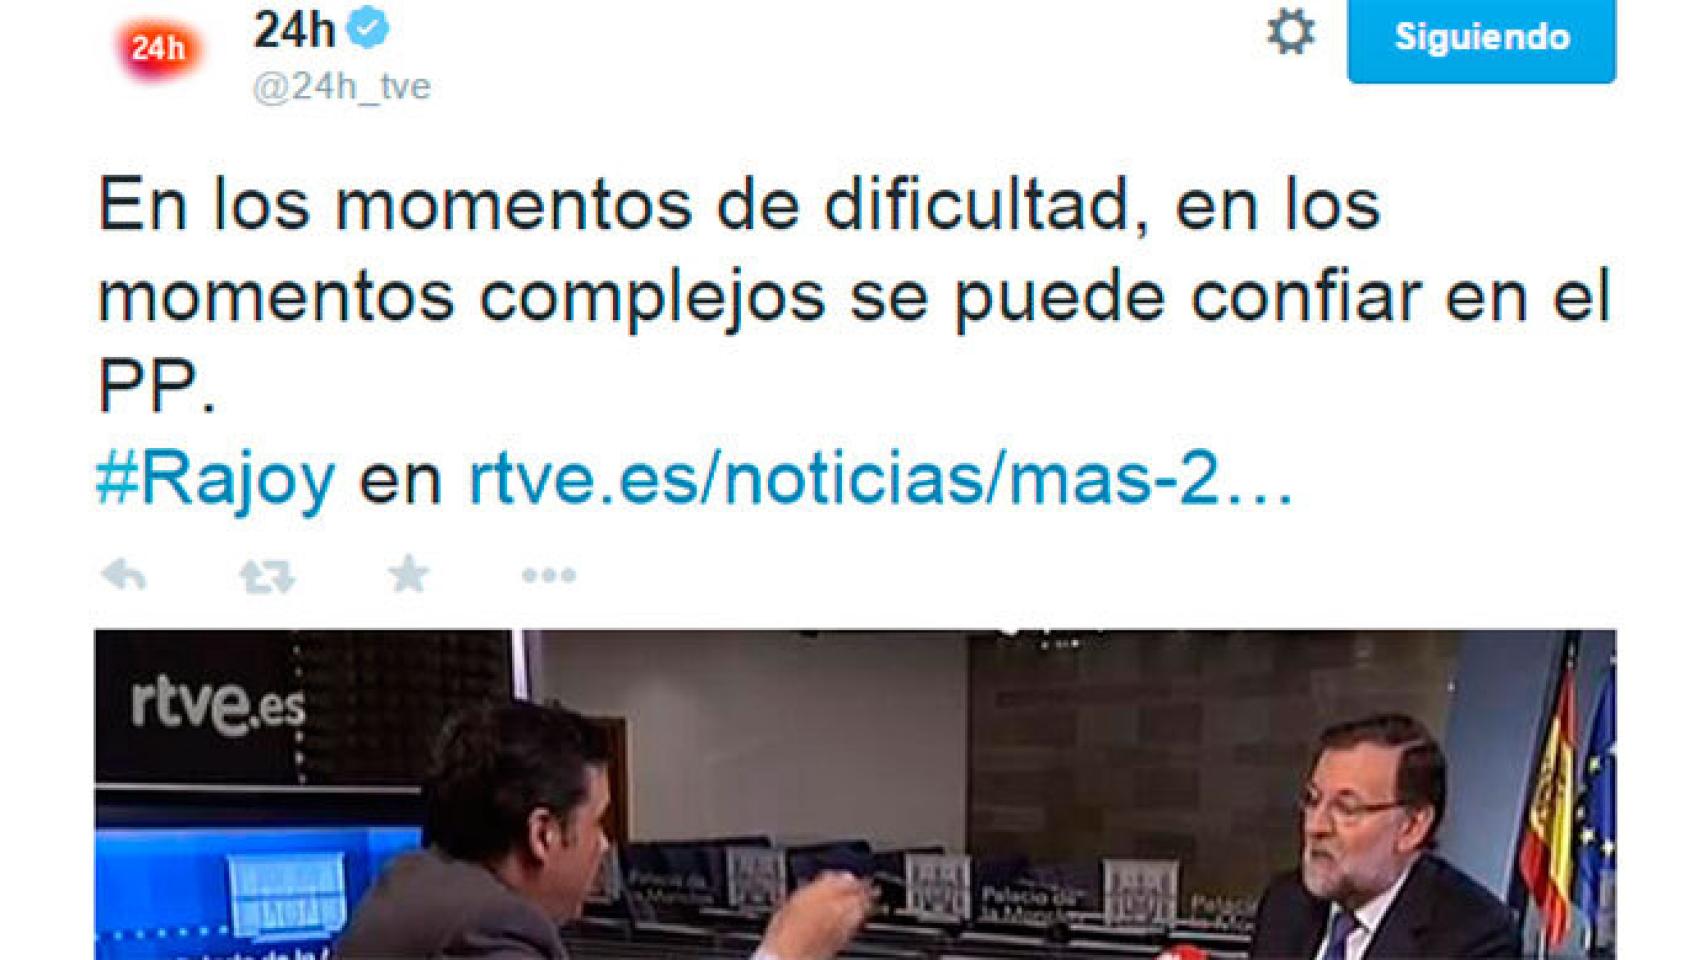 El Canal 24 Horas en Twitter ‘confía’ en el PP en los momentos de dificultad